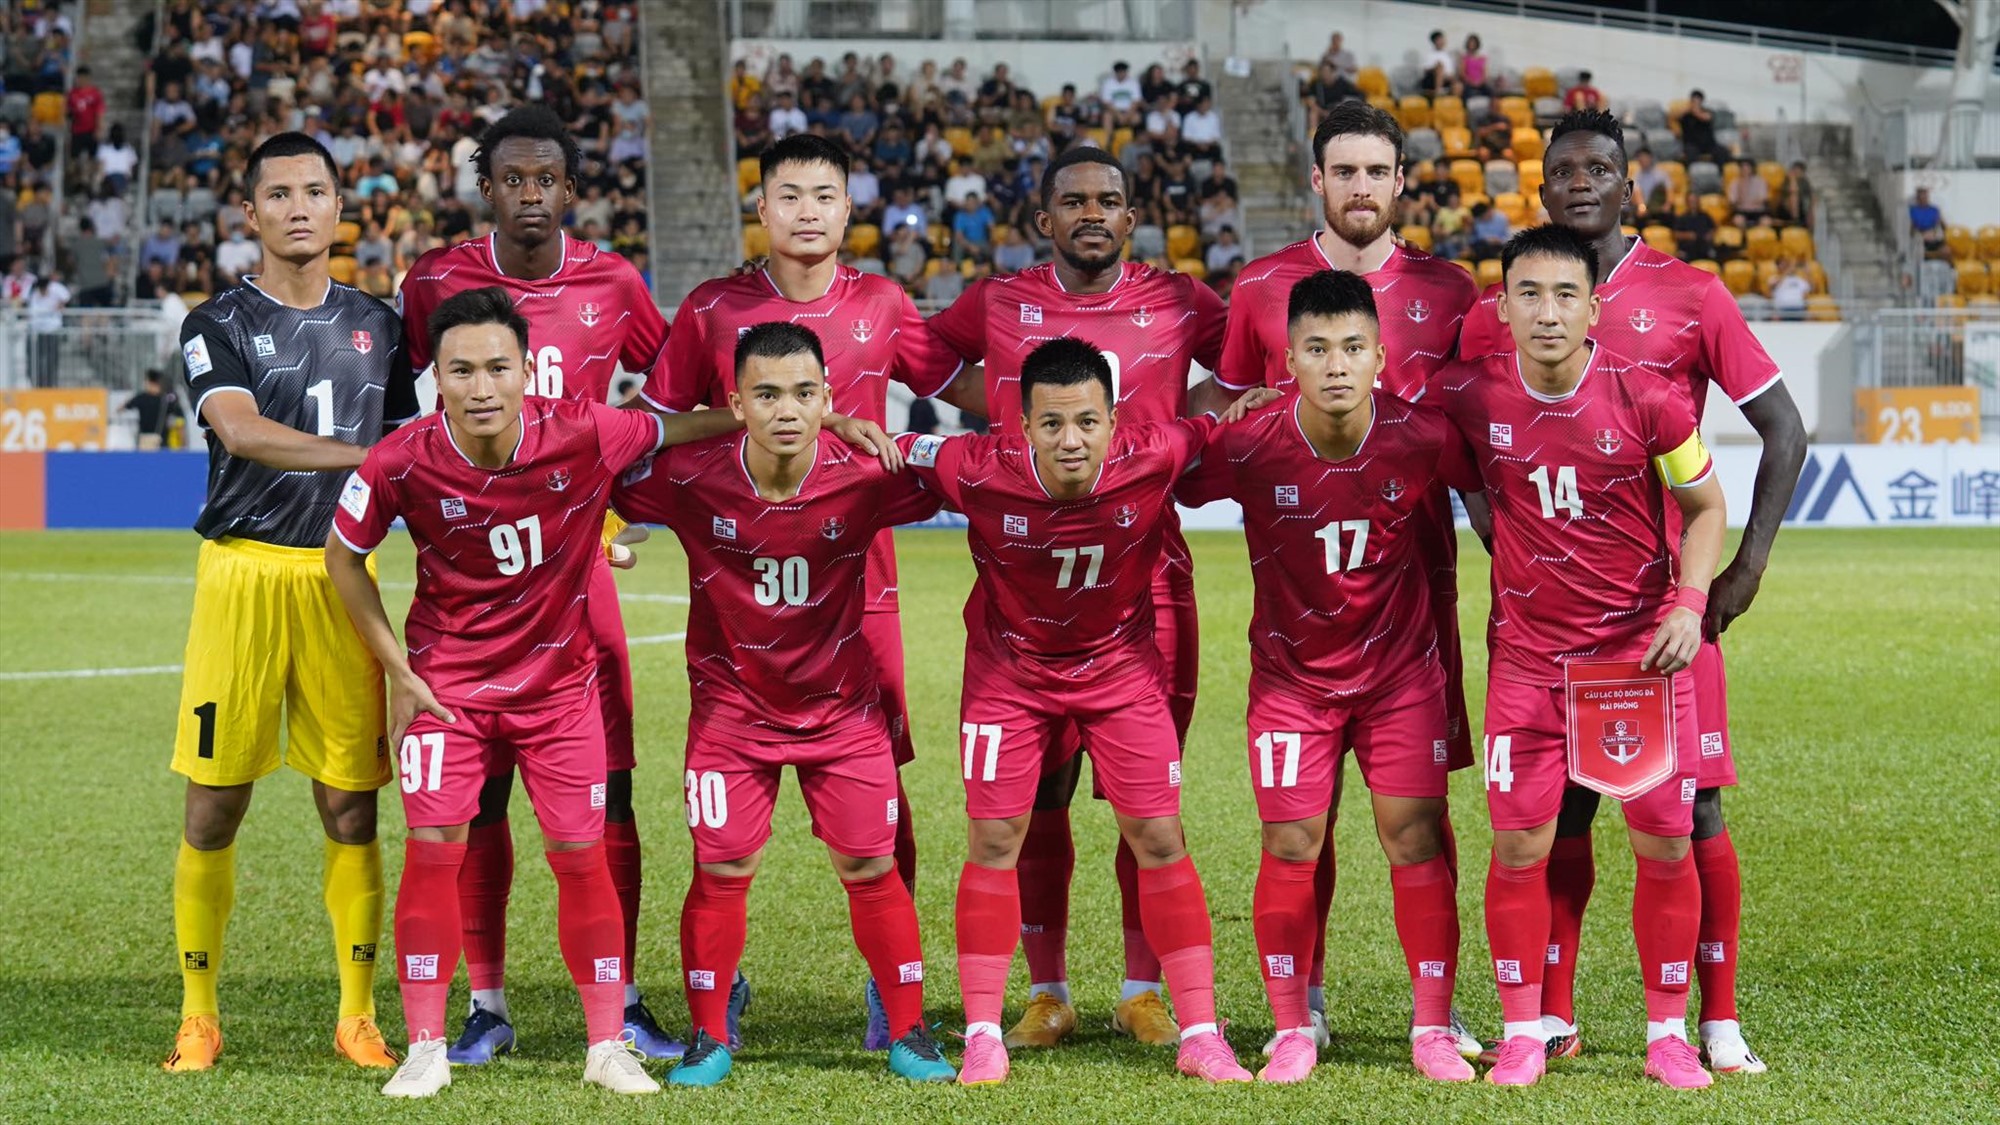 Hải Phòng sẽ đại diện cho Việt Nam thi đấu tại AFC Cup mùa 2023-2024. Ảnh: Bá Bá